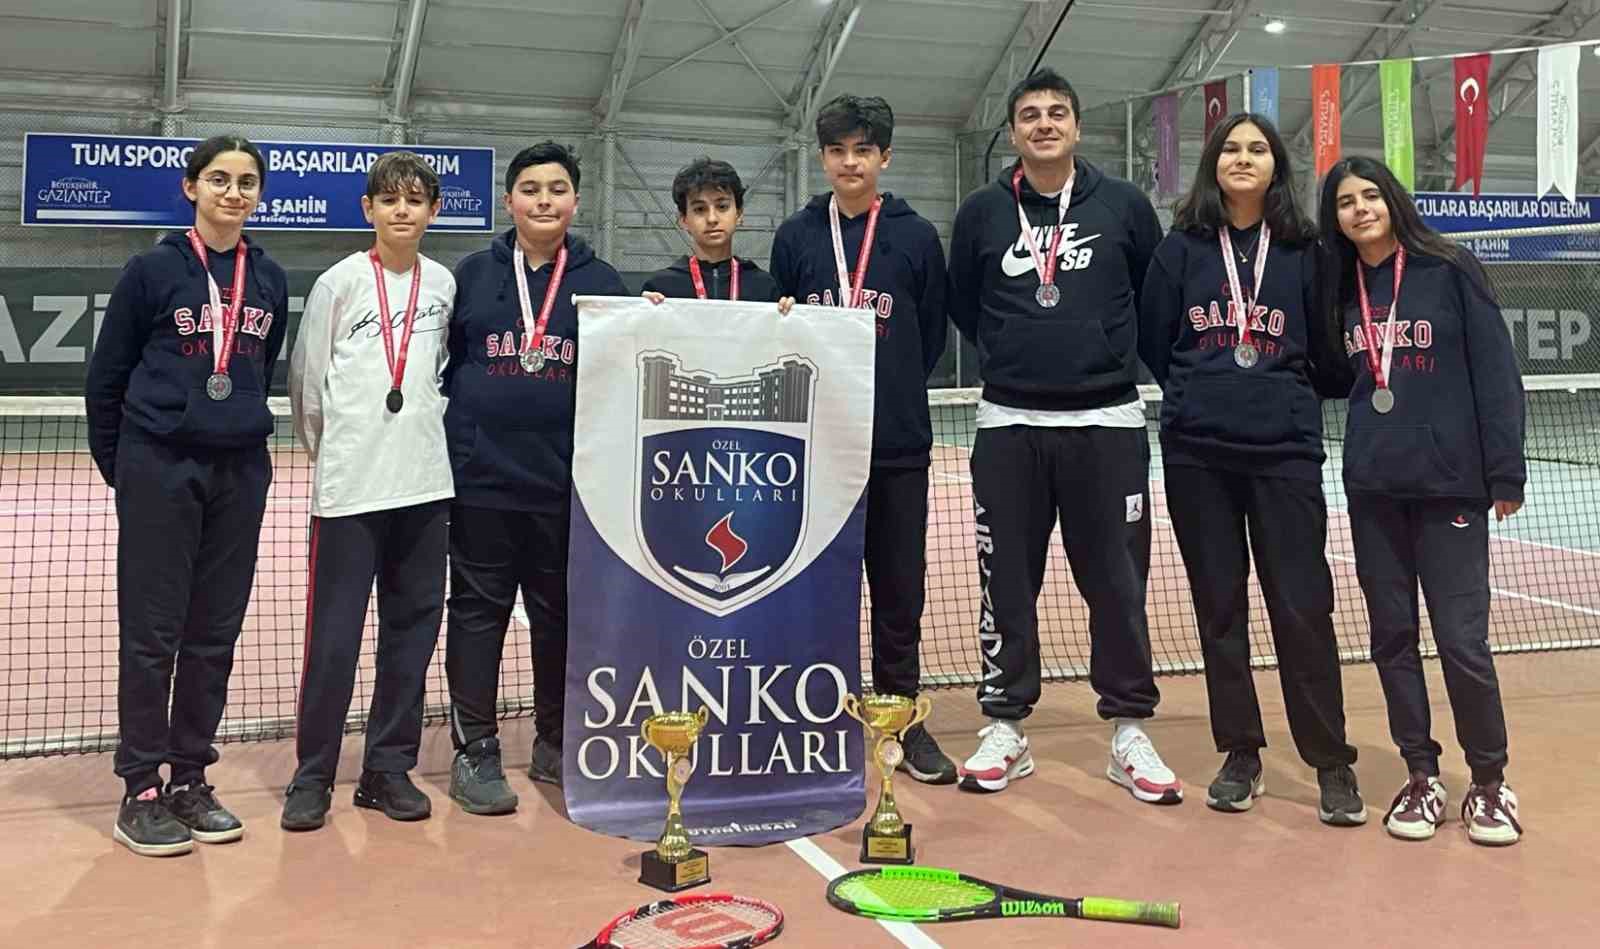 SANKO Okulları öğrencileri teniste il ikincisi oldu